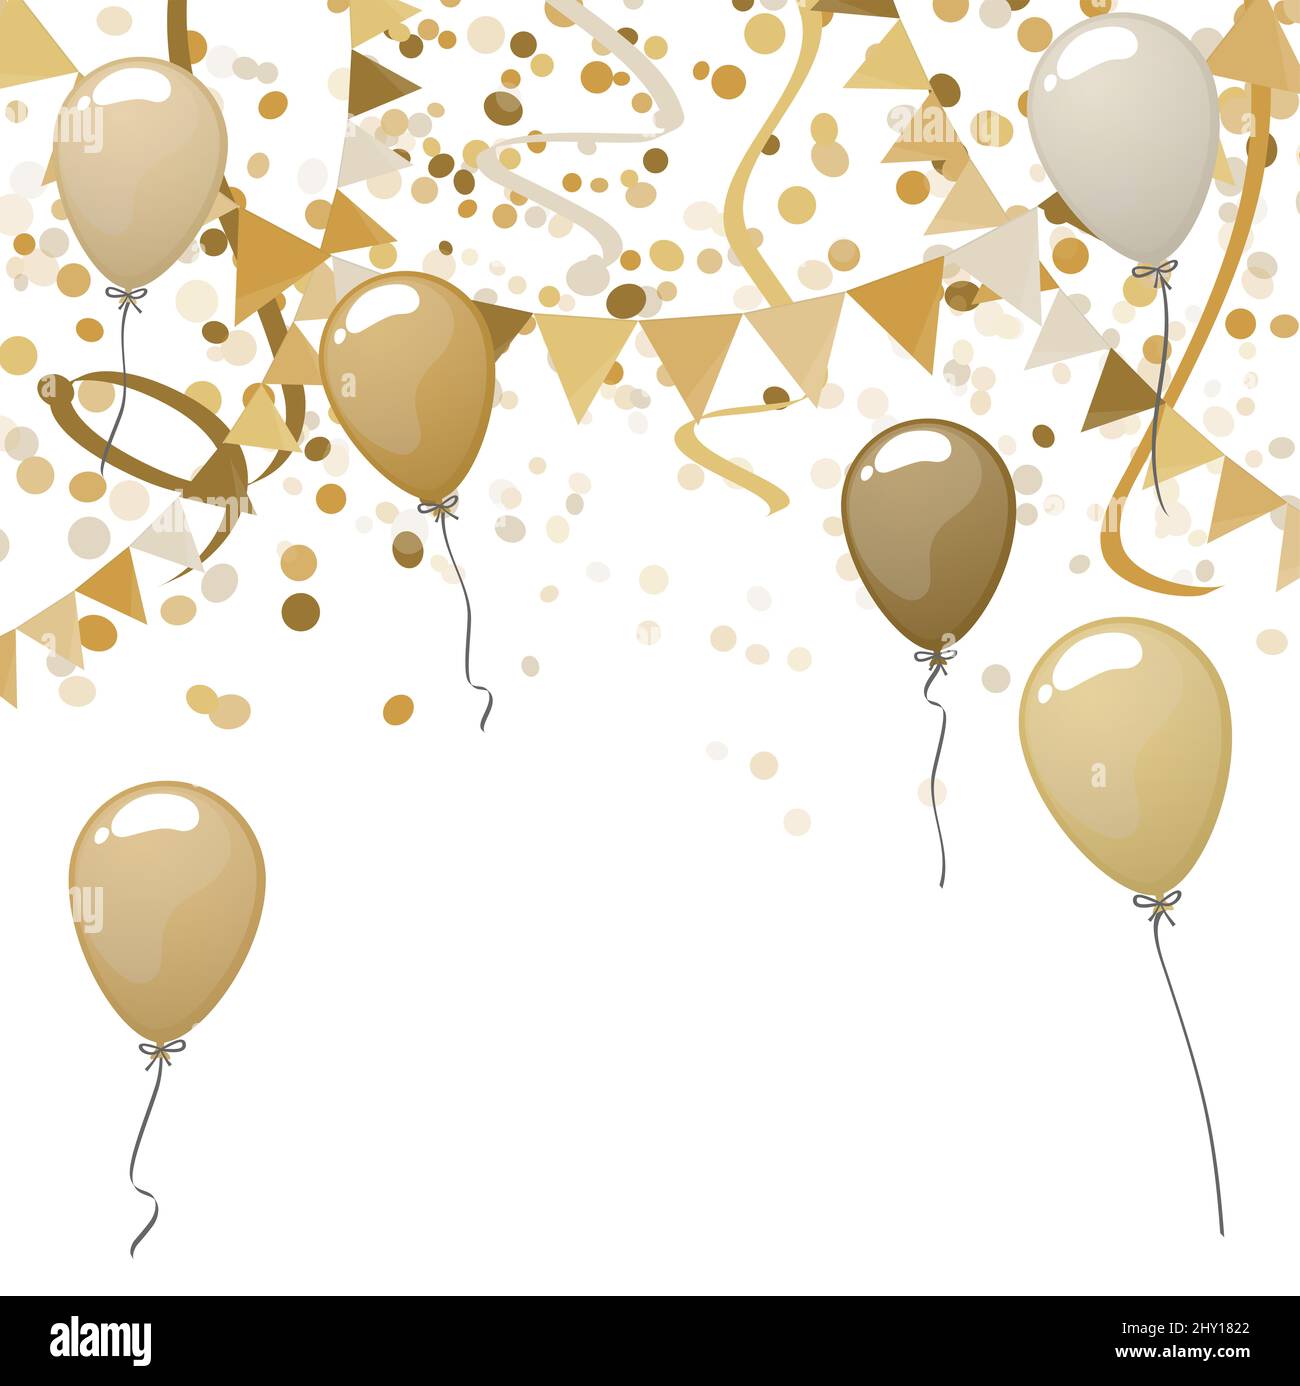 Illustration vectorielle EPS 10 de guirlandes dorées et ballons avec banderoles et confetti sur fond blanc pour mariage ou sylve Banque D'Images